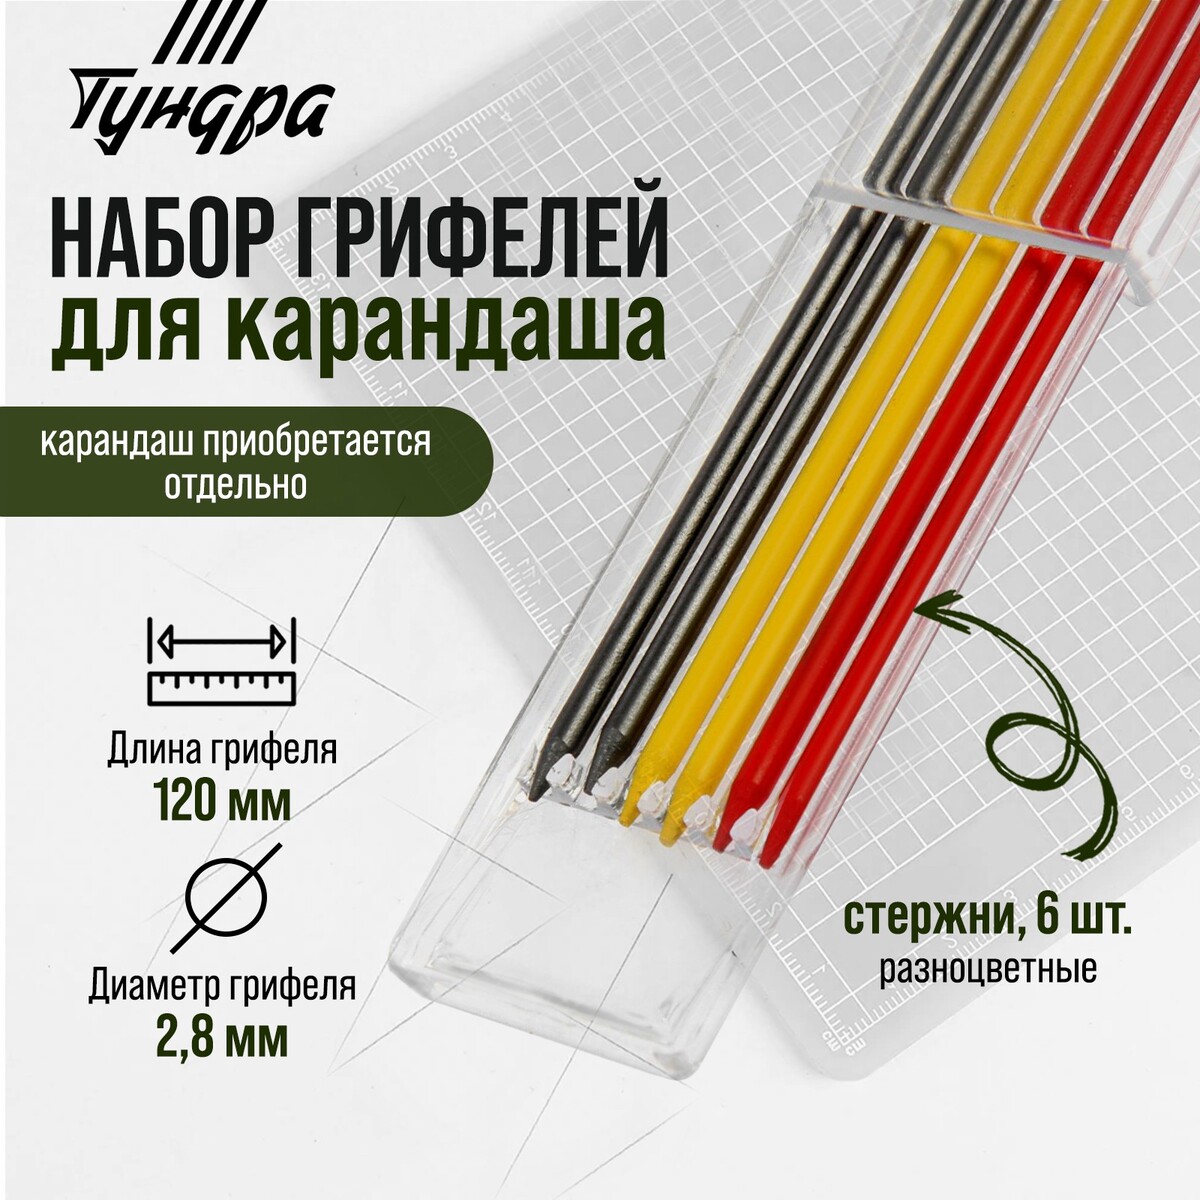 Набор грифелей для карандаша тундра, цветные (черные, красные, желтые), 120 мм, 6 штук ушм тундра 700 вт 11000 об мин 125 мм